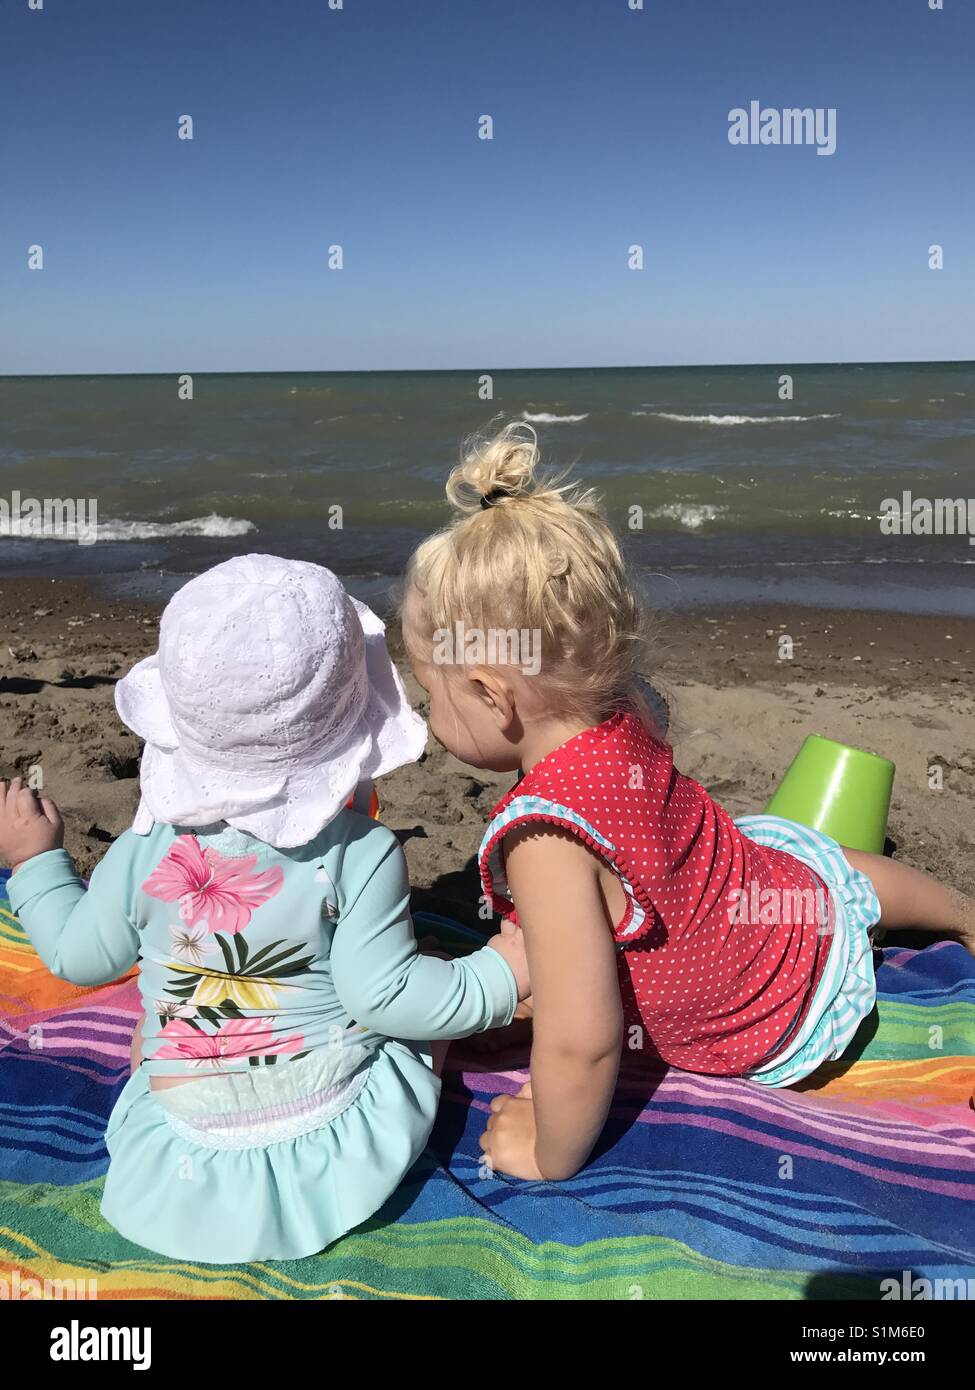 Zwei Kleine Mädchen In Badekleidung Sitzen Auf Einem Bunten Handtuch Am Strand Stockfotografie